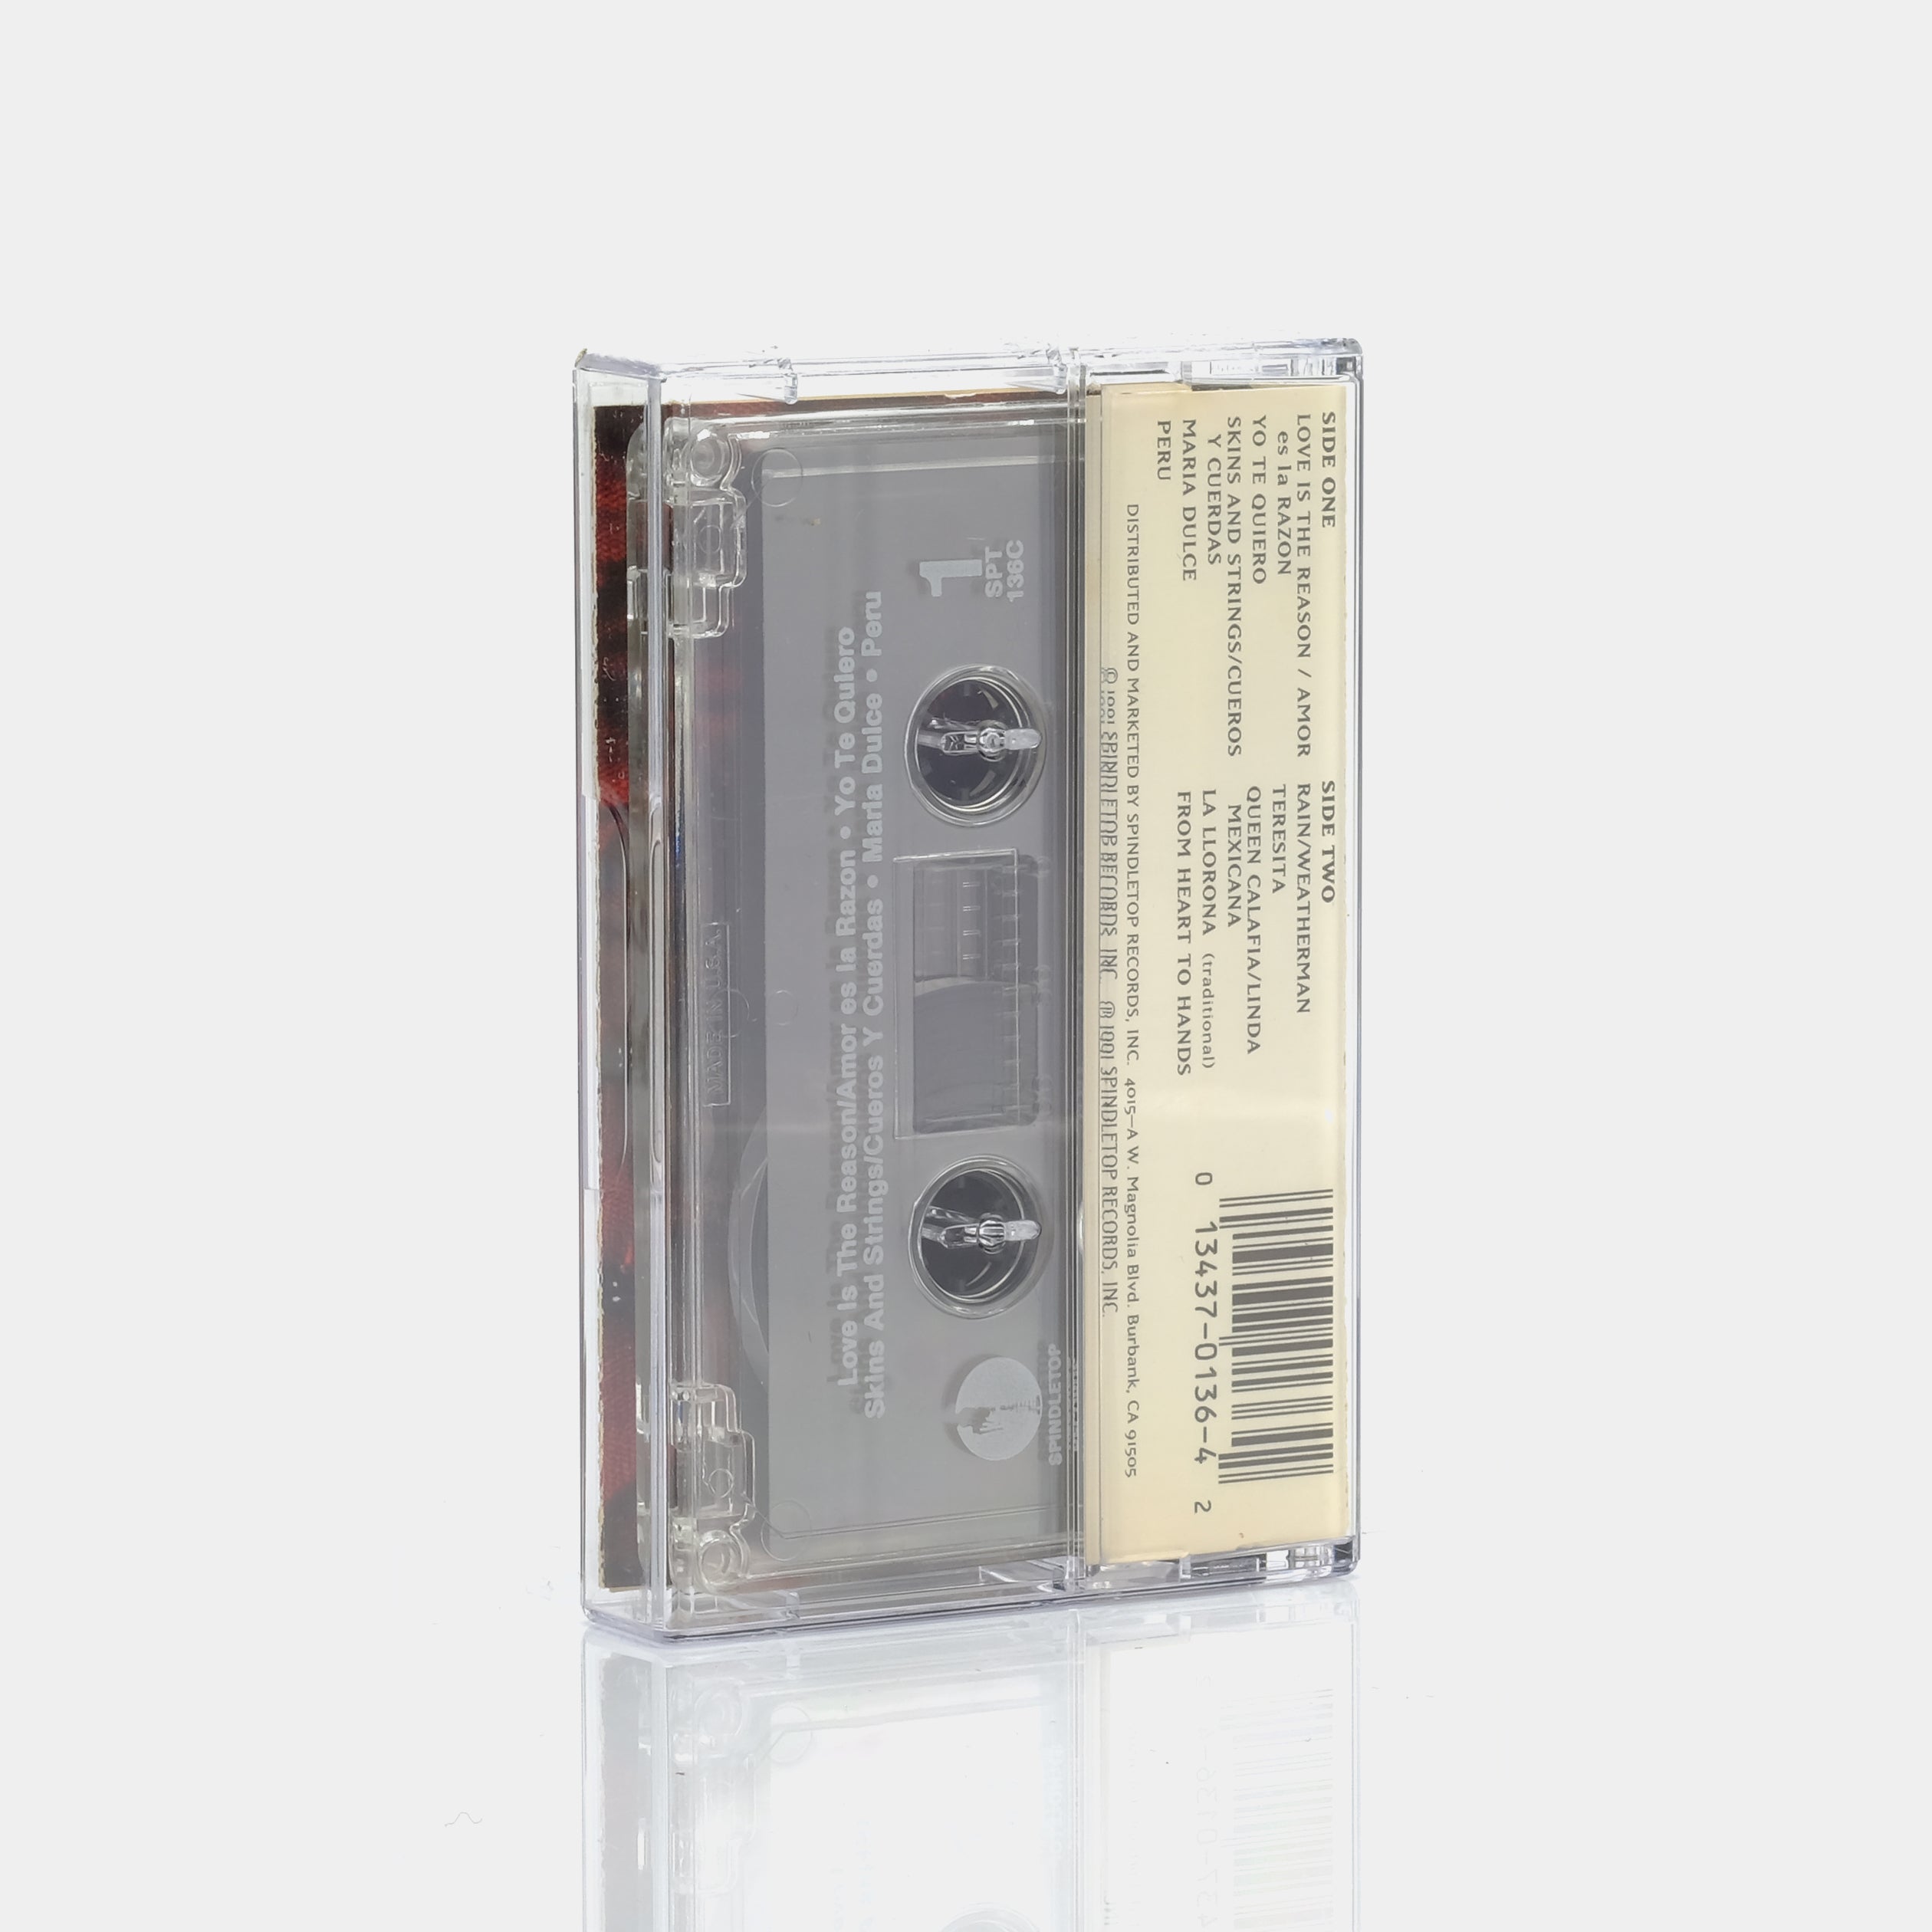 Marcos Loya - Love Is The Reason Cassette Tape